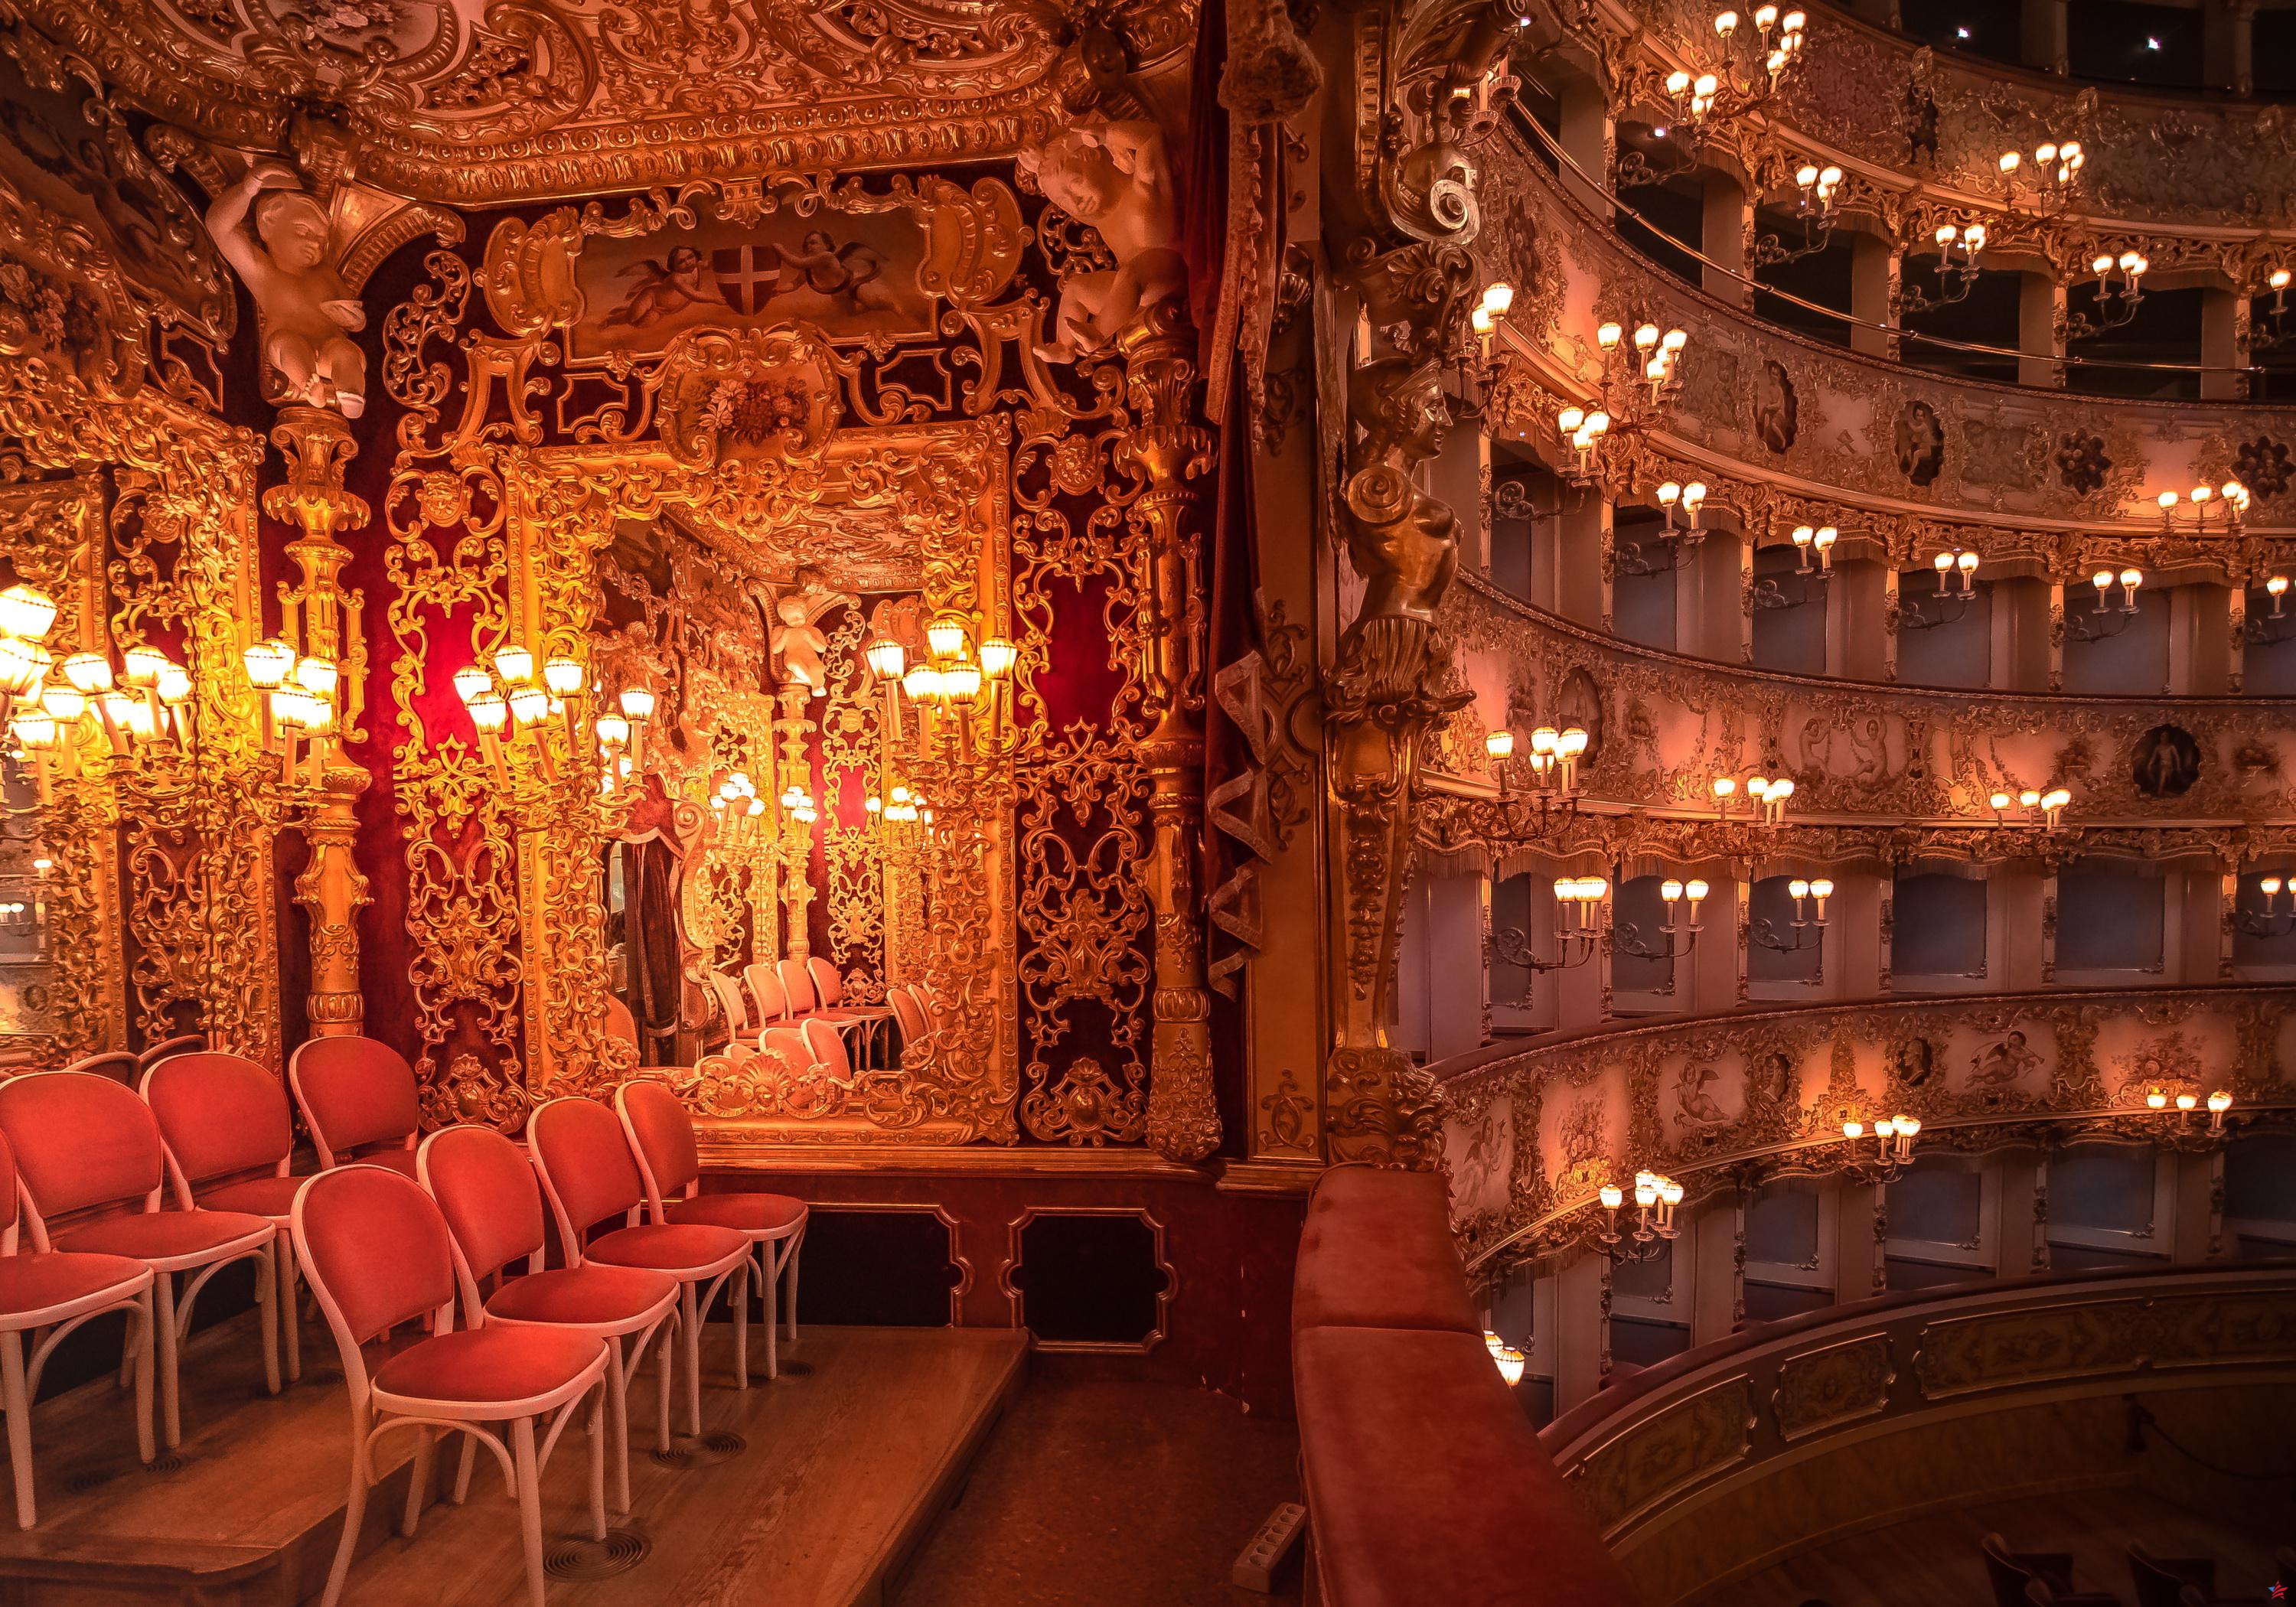 “¡Nada de fascistas en la ópera!” : En Niza, el concierto de un director de orquesta italiano interrumpido por Antifa